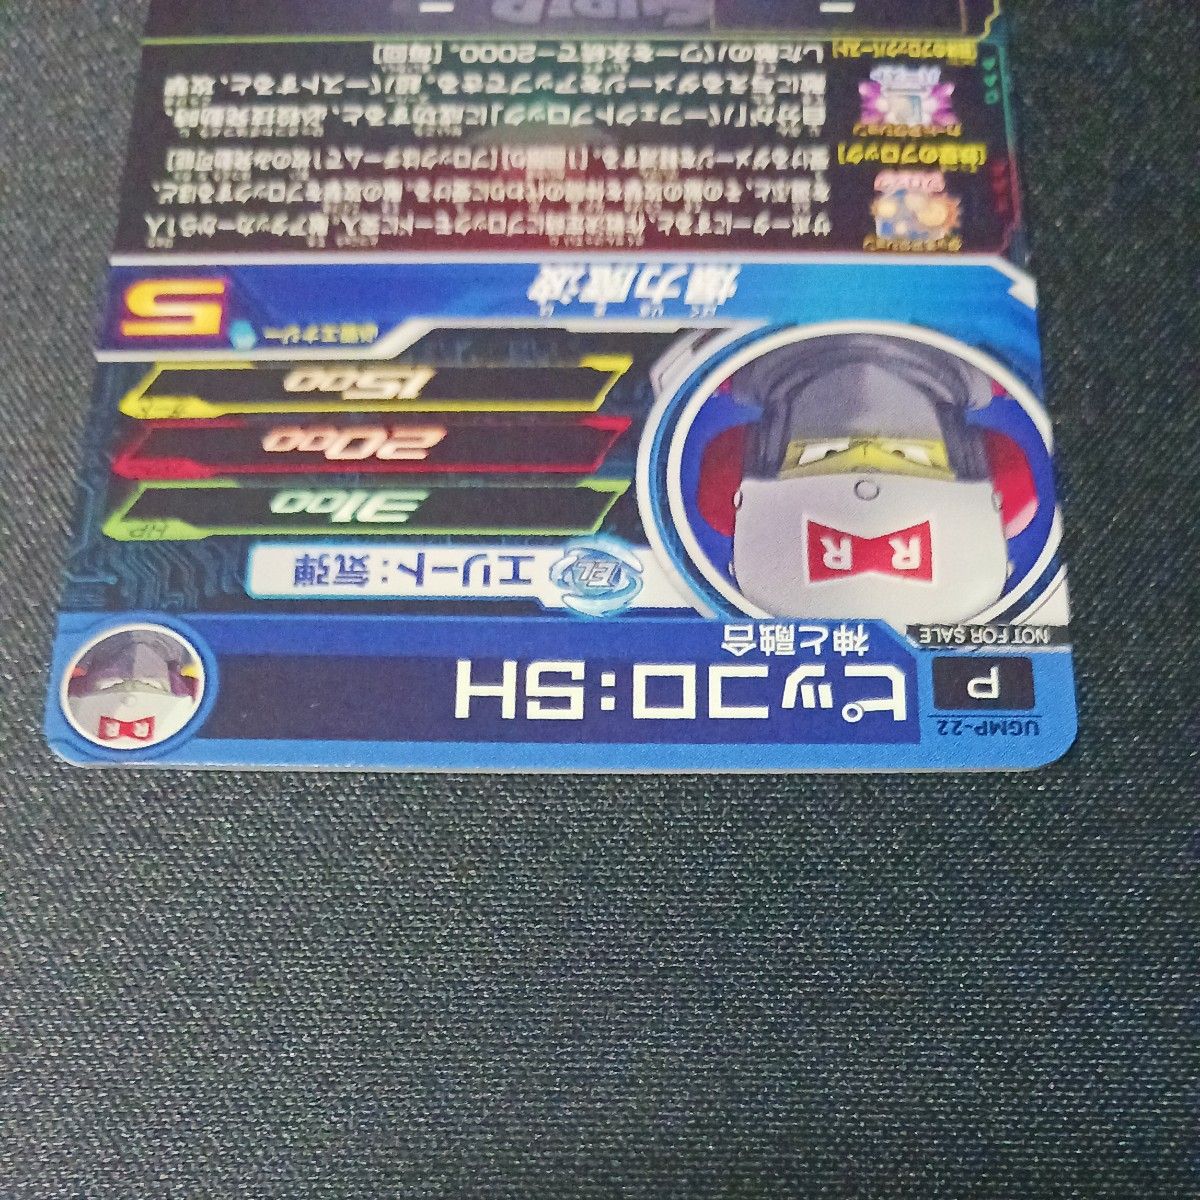 ドラゴンボールヒーローズ UGMP-22 ピッコロSH 大会プロモ ②